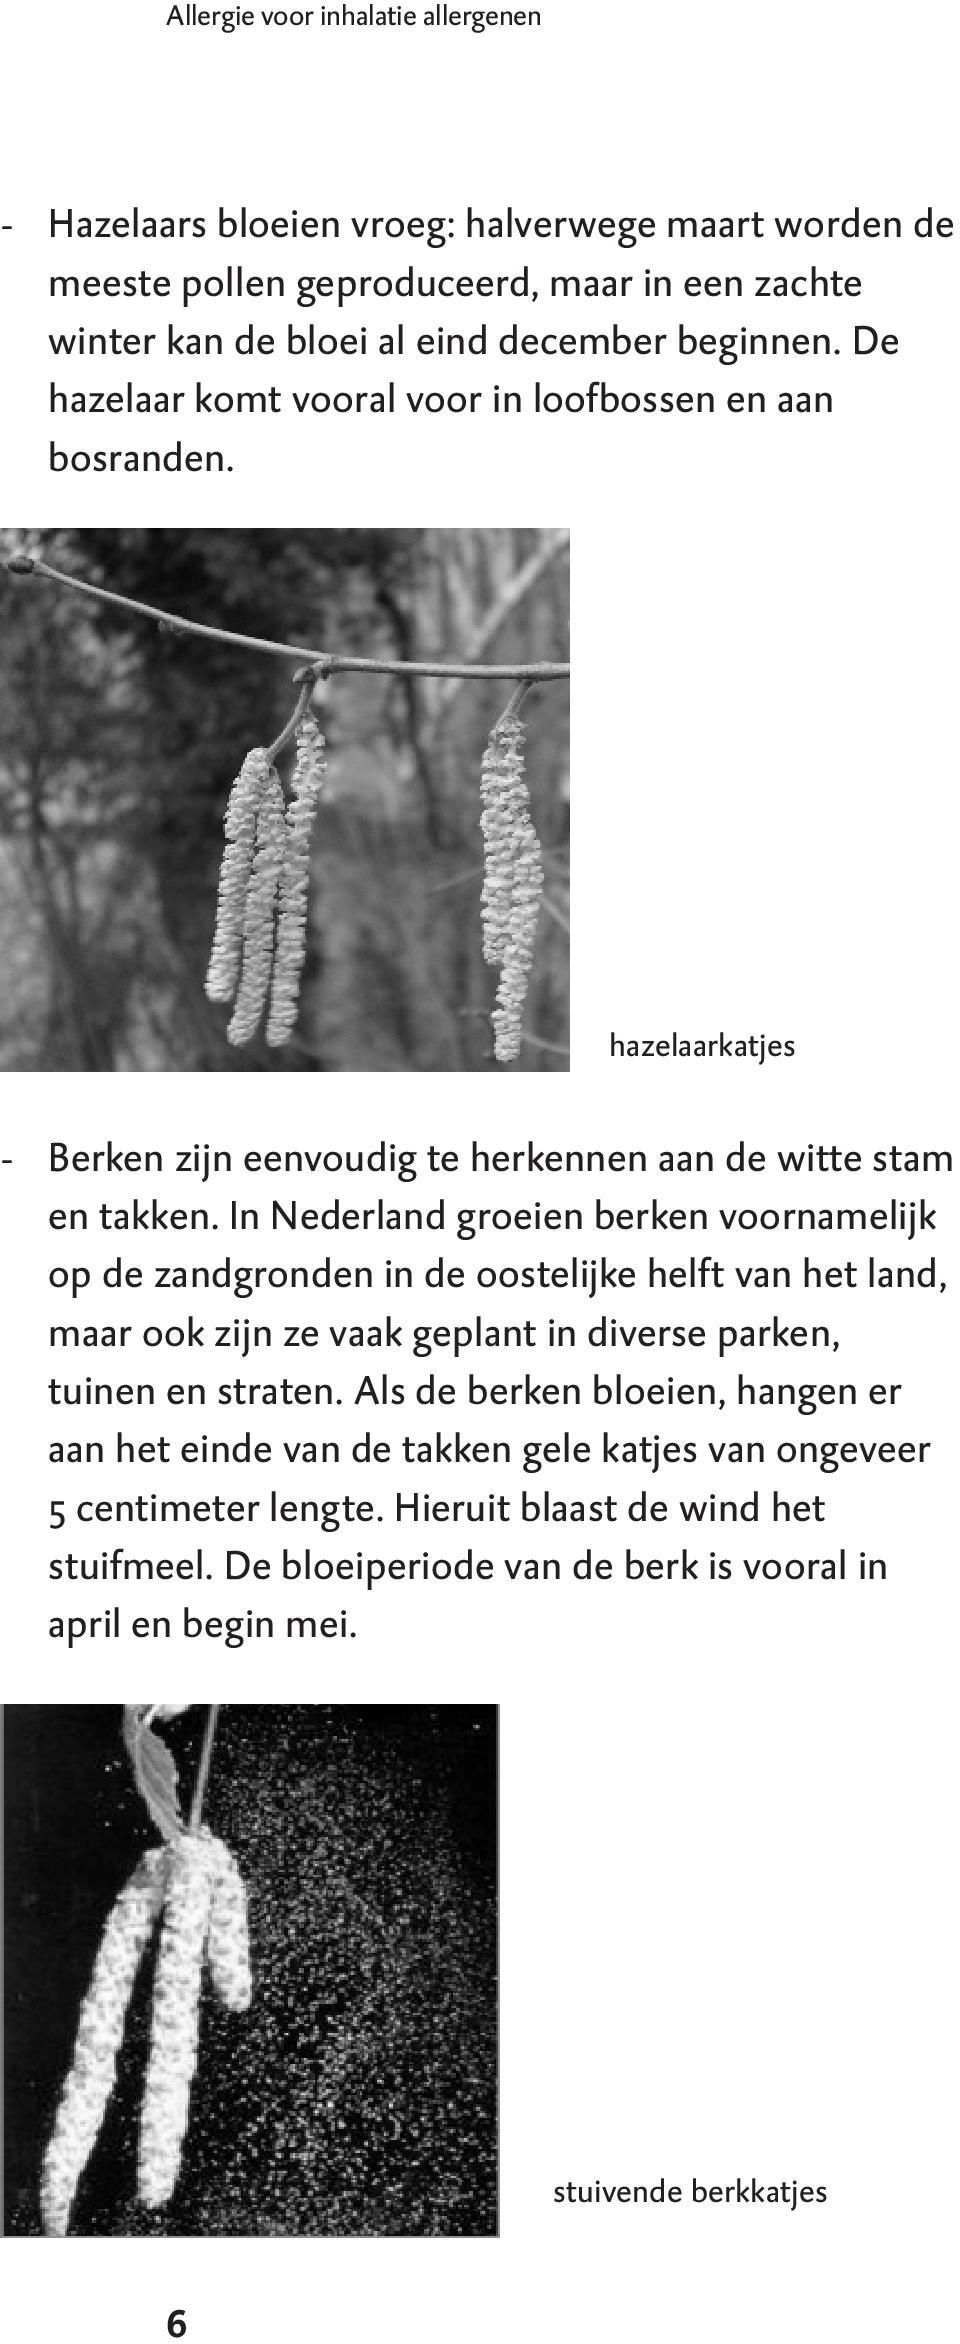 In Nederland groeien berken voornamelijk op de zandgronden in de oostelijke helft van het land, maar ook zijn ze vaak geplant in diverse parken, tuinen en straten.